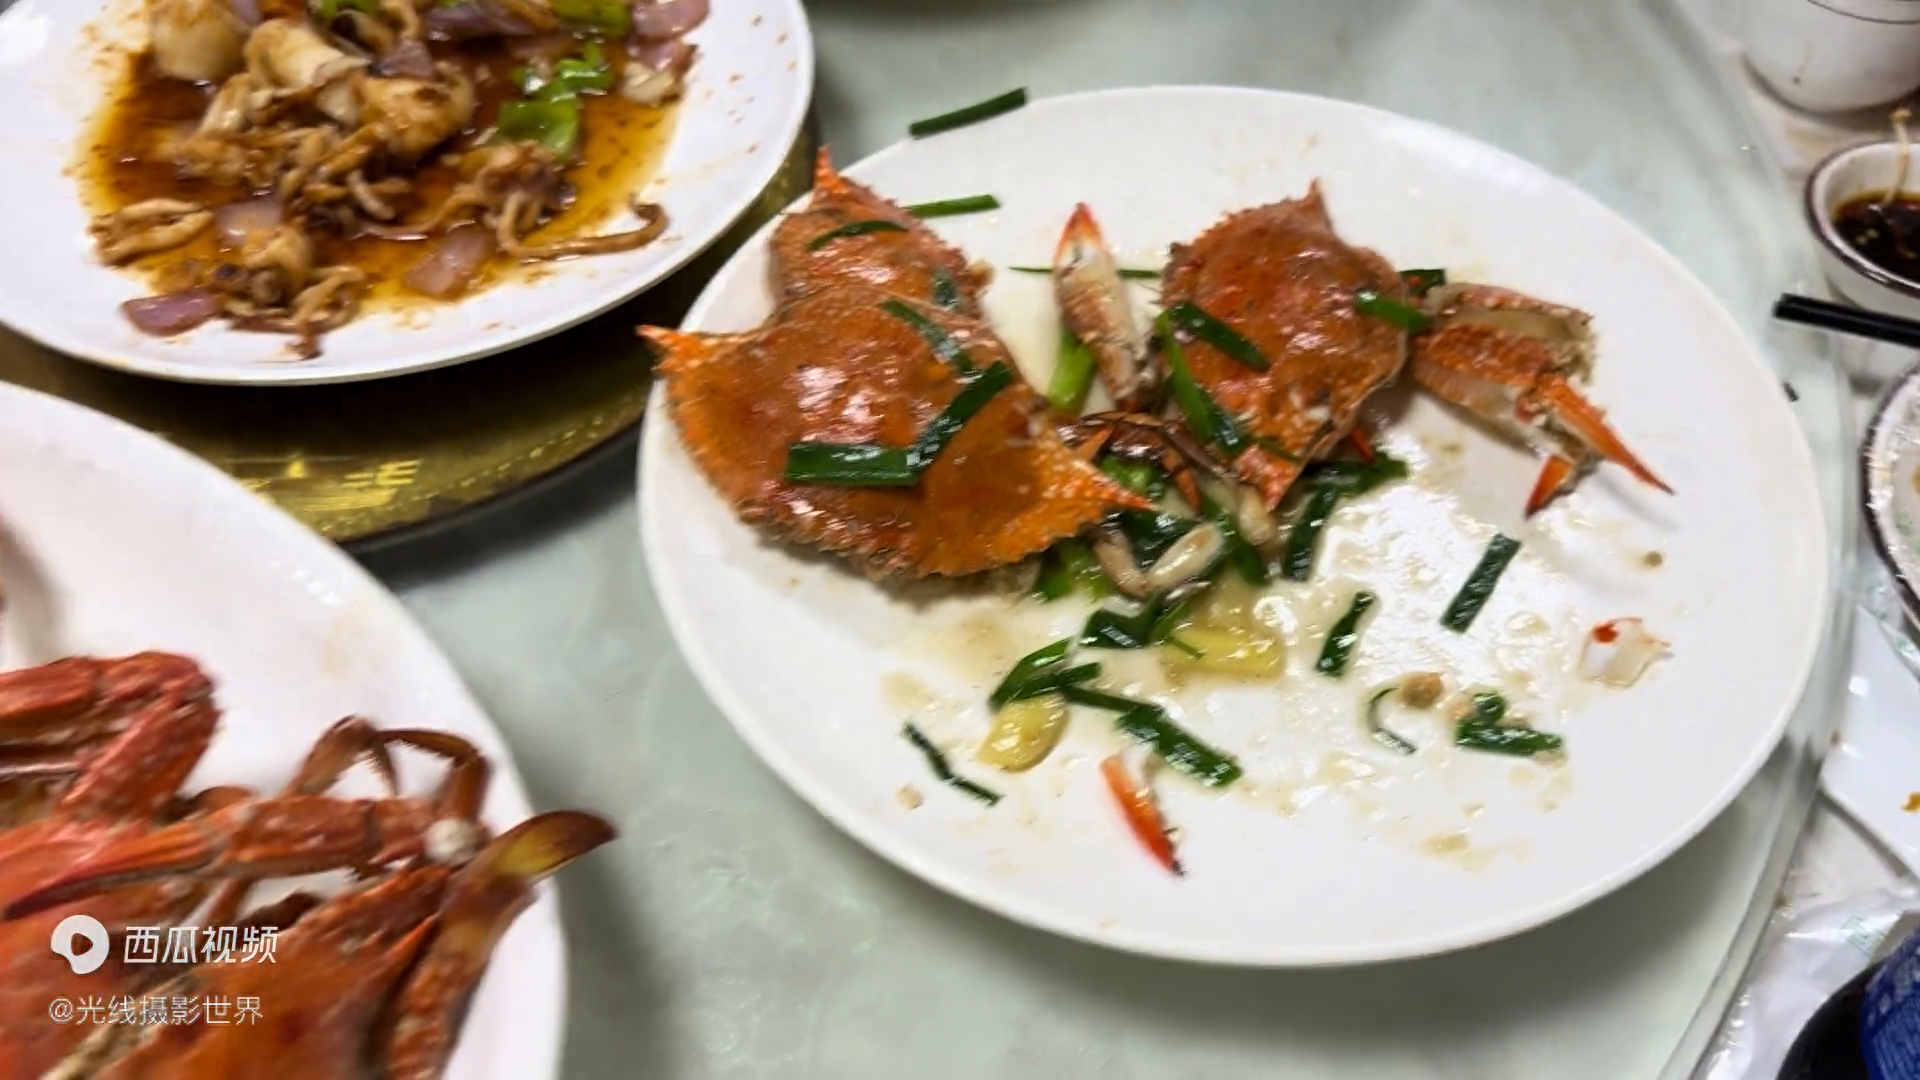 湛江的海鲜价格非常实惠，两盘以螃蟹为主料的菜肴只需要一百元左右，这是一种带膏的螃蟹，它的个头很大，但是煮好后变得很小，而且活蹦乱跳的时候也非常大。这种皮皮虾只需要